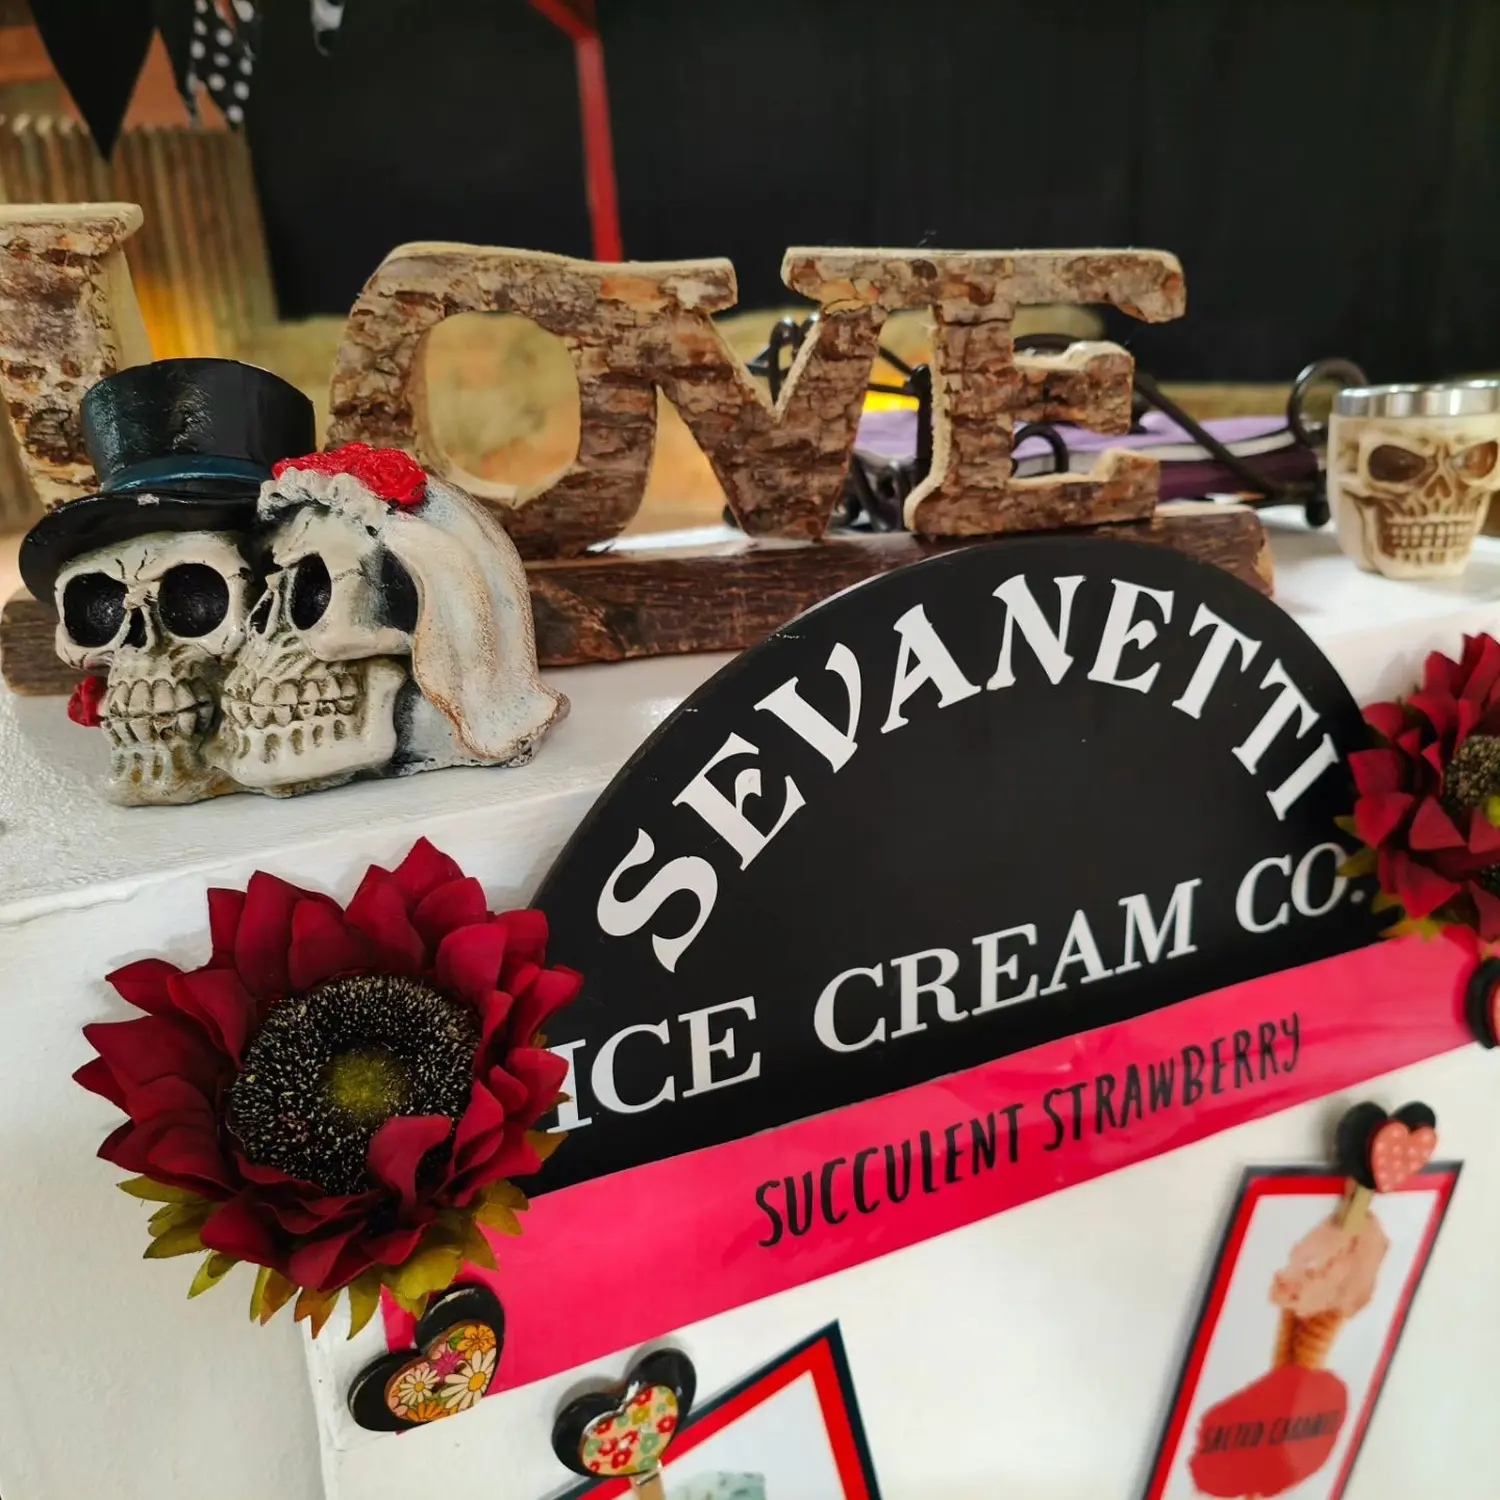 Sevanetti Ice Cream Bikes Black, White and Skulls decoration sets